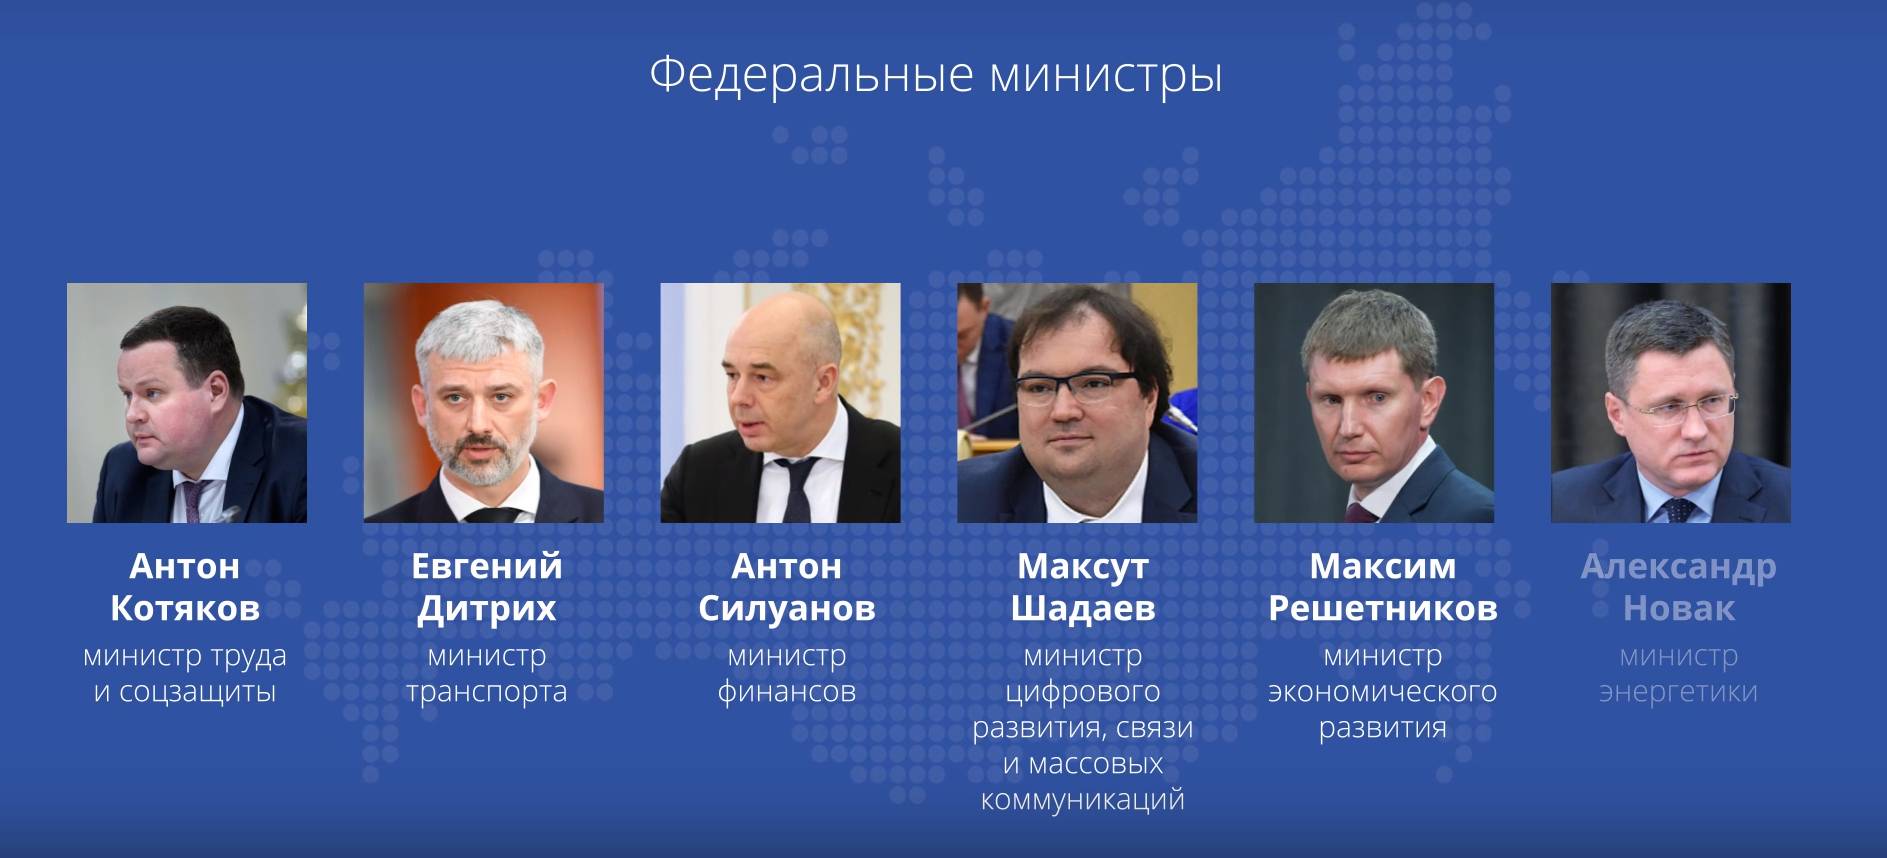 Представители власти в РФ